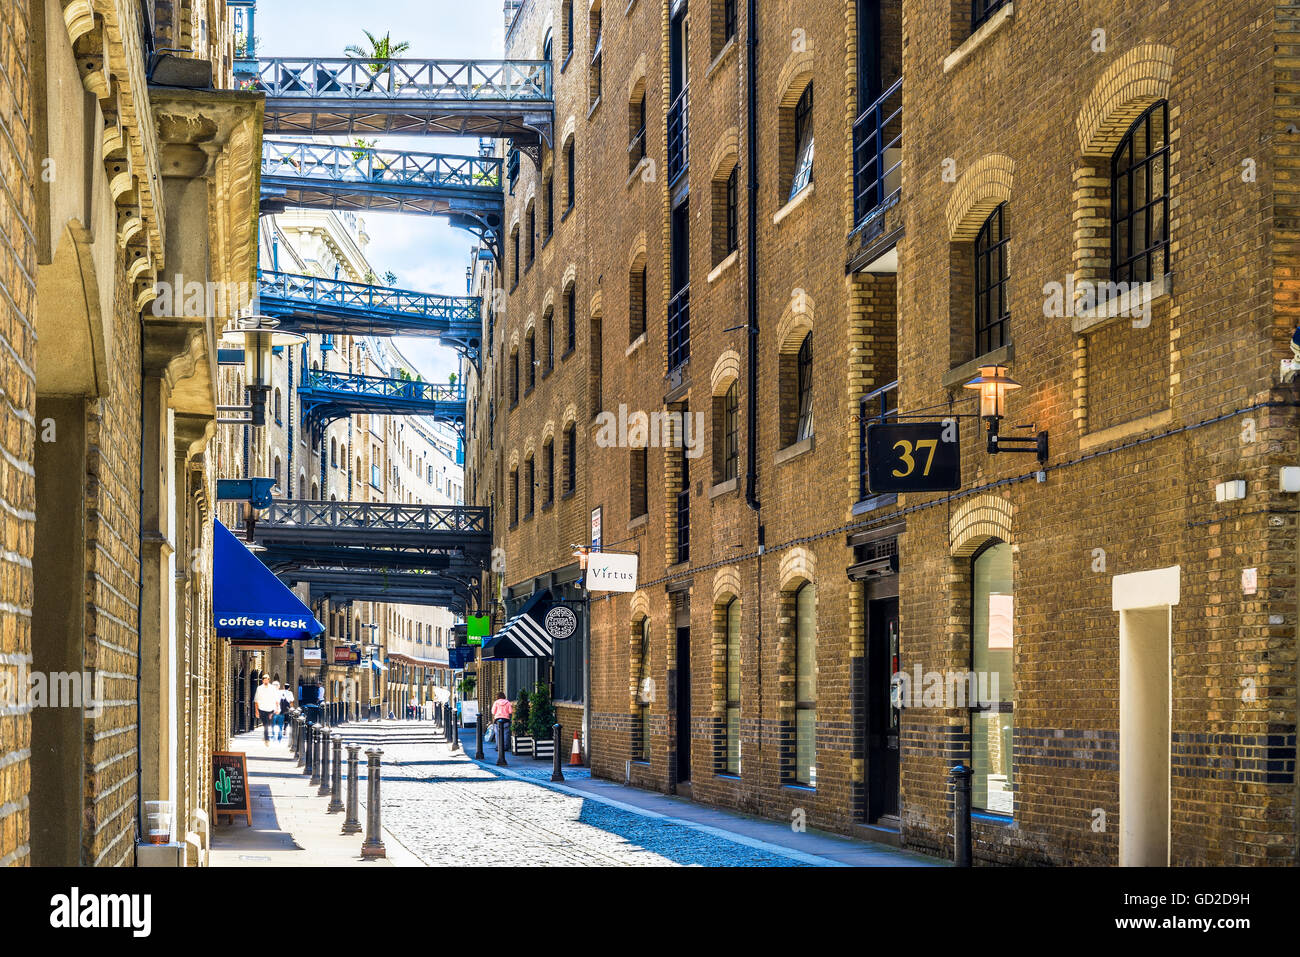 London, UK - 24. Juni 2017 - Straßenansicht von Shad Thames, einer historischen am Flussufer Straße neben der Tower Bridge in Bermondsey Stockfoto